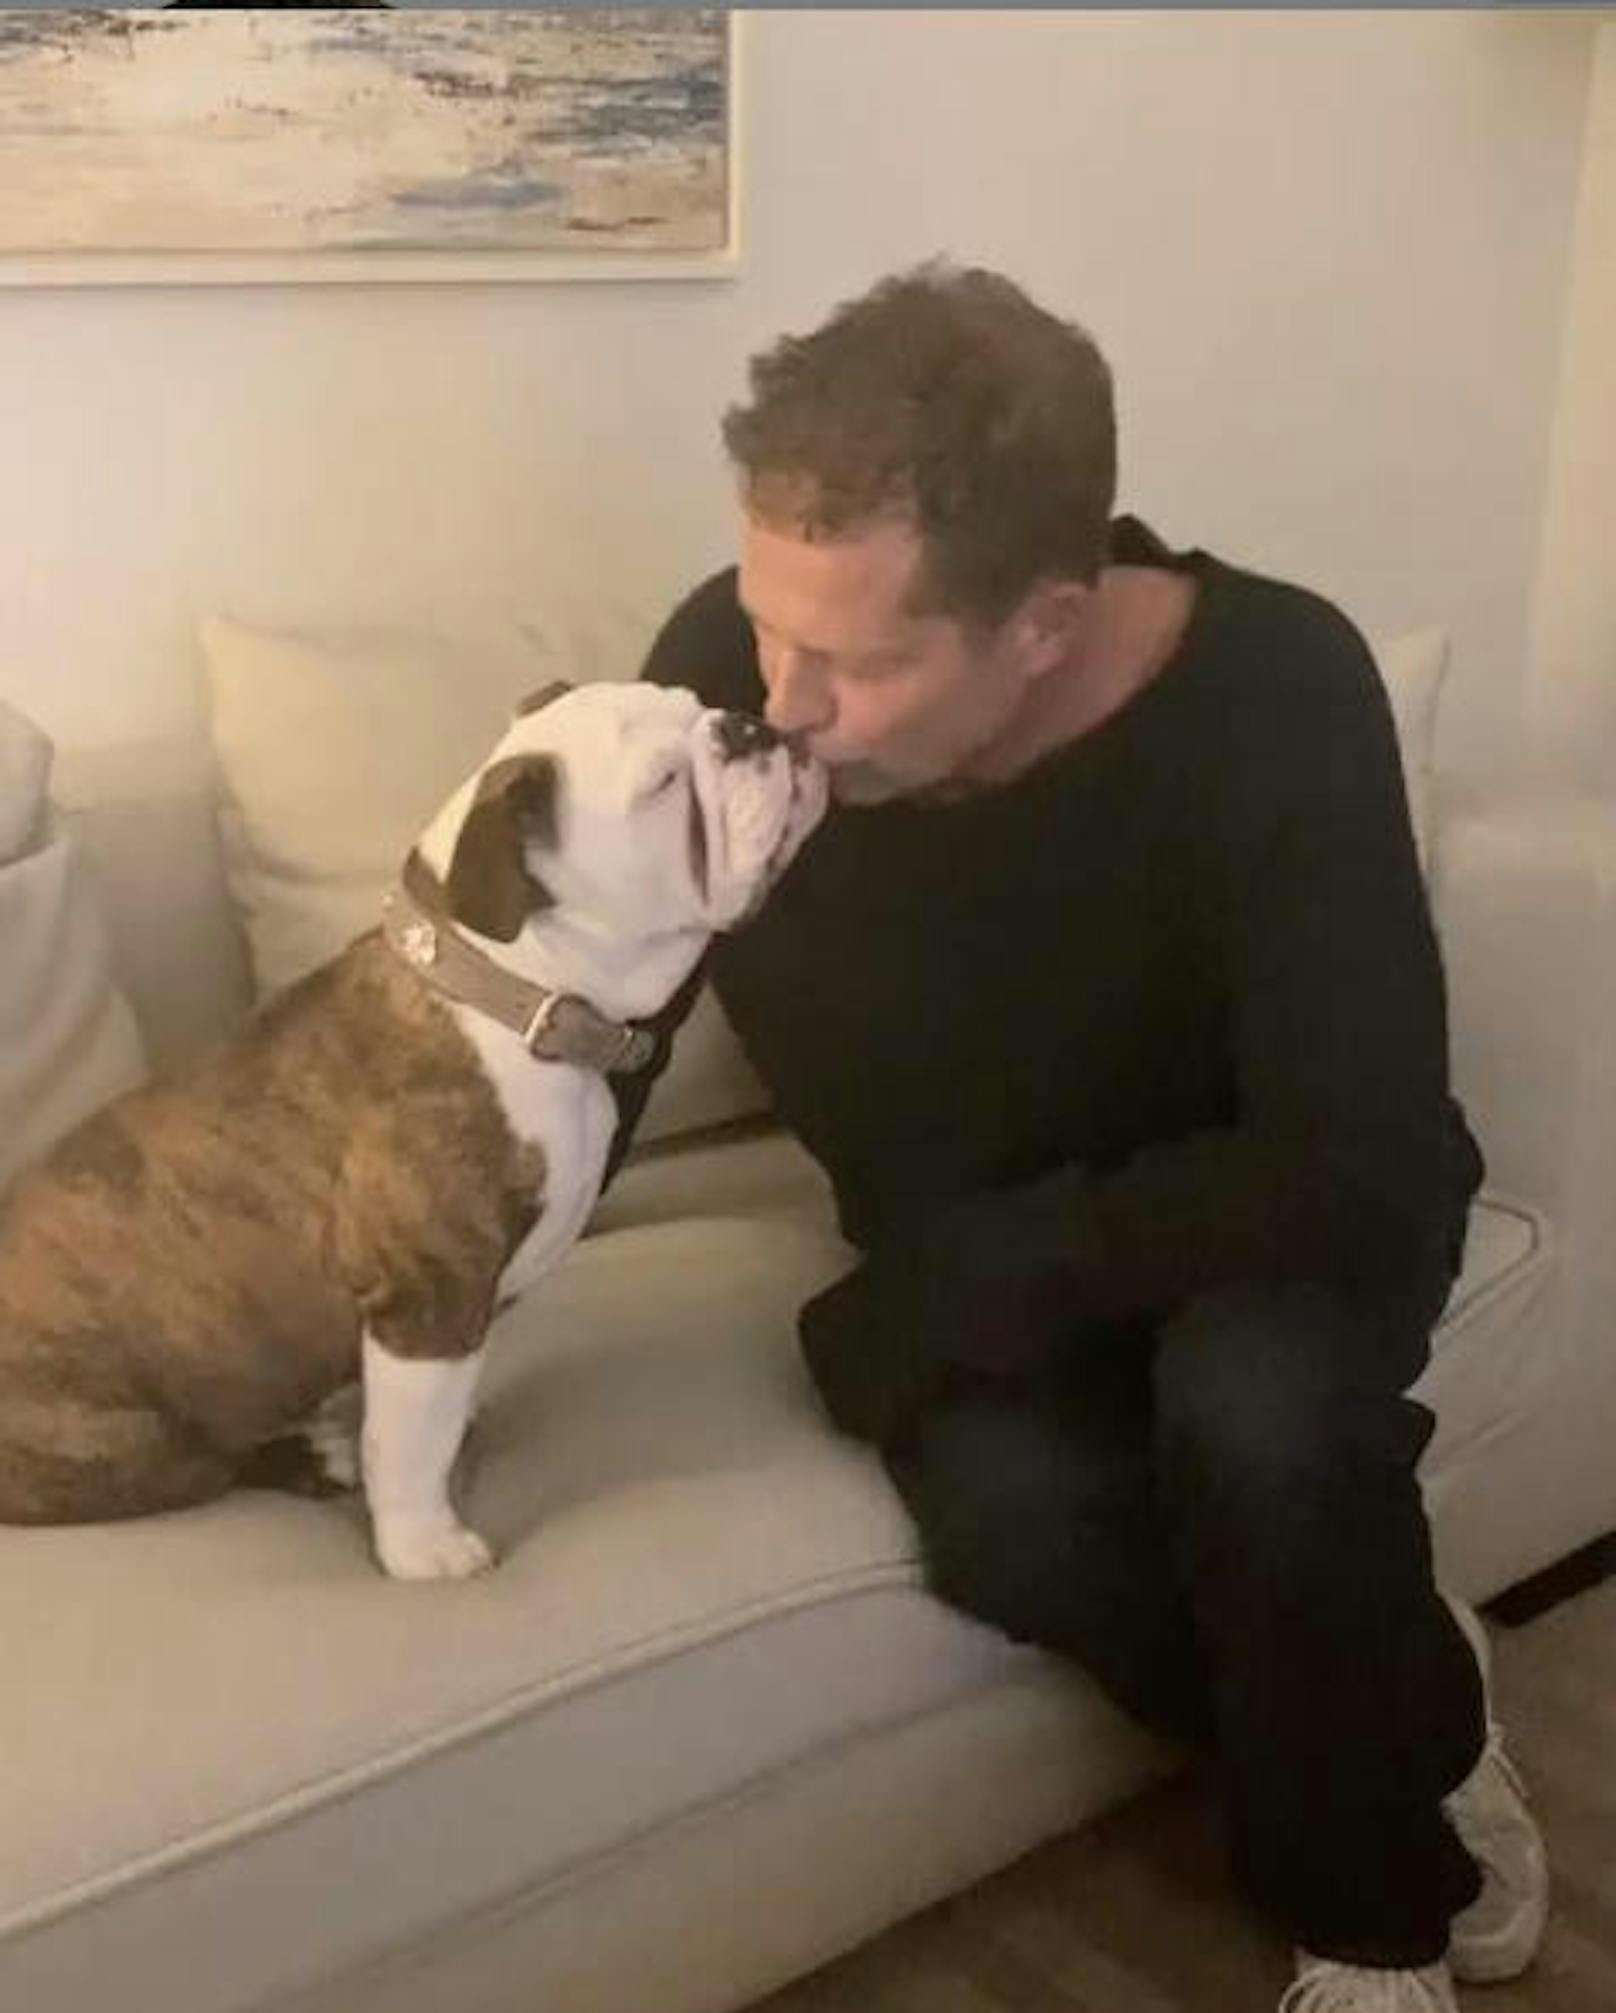 25.11.2019: Eklig oder süß? Til Schweiger küsst hier seine Bulldogge Wilma auf den Mund. "Französische Küsse mit einer englischen Bulldogge sind die besten", schrieb er dazu.